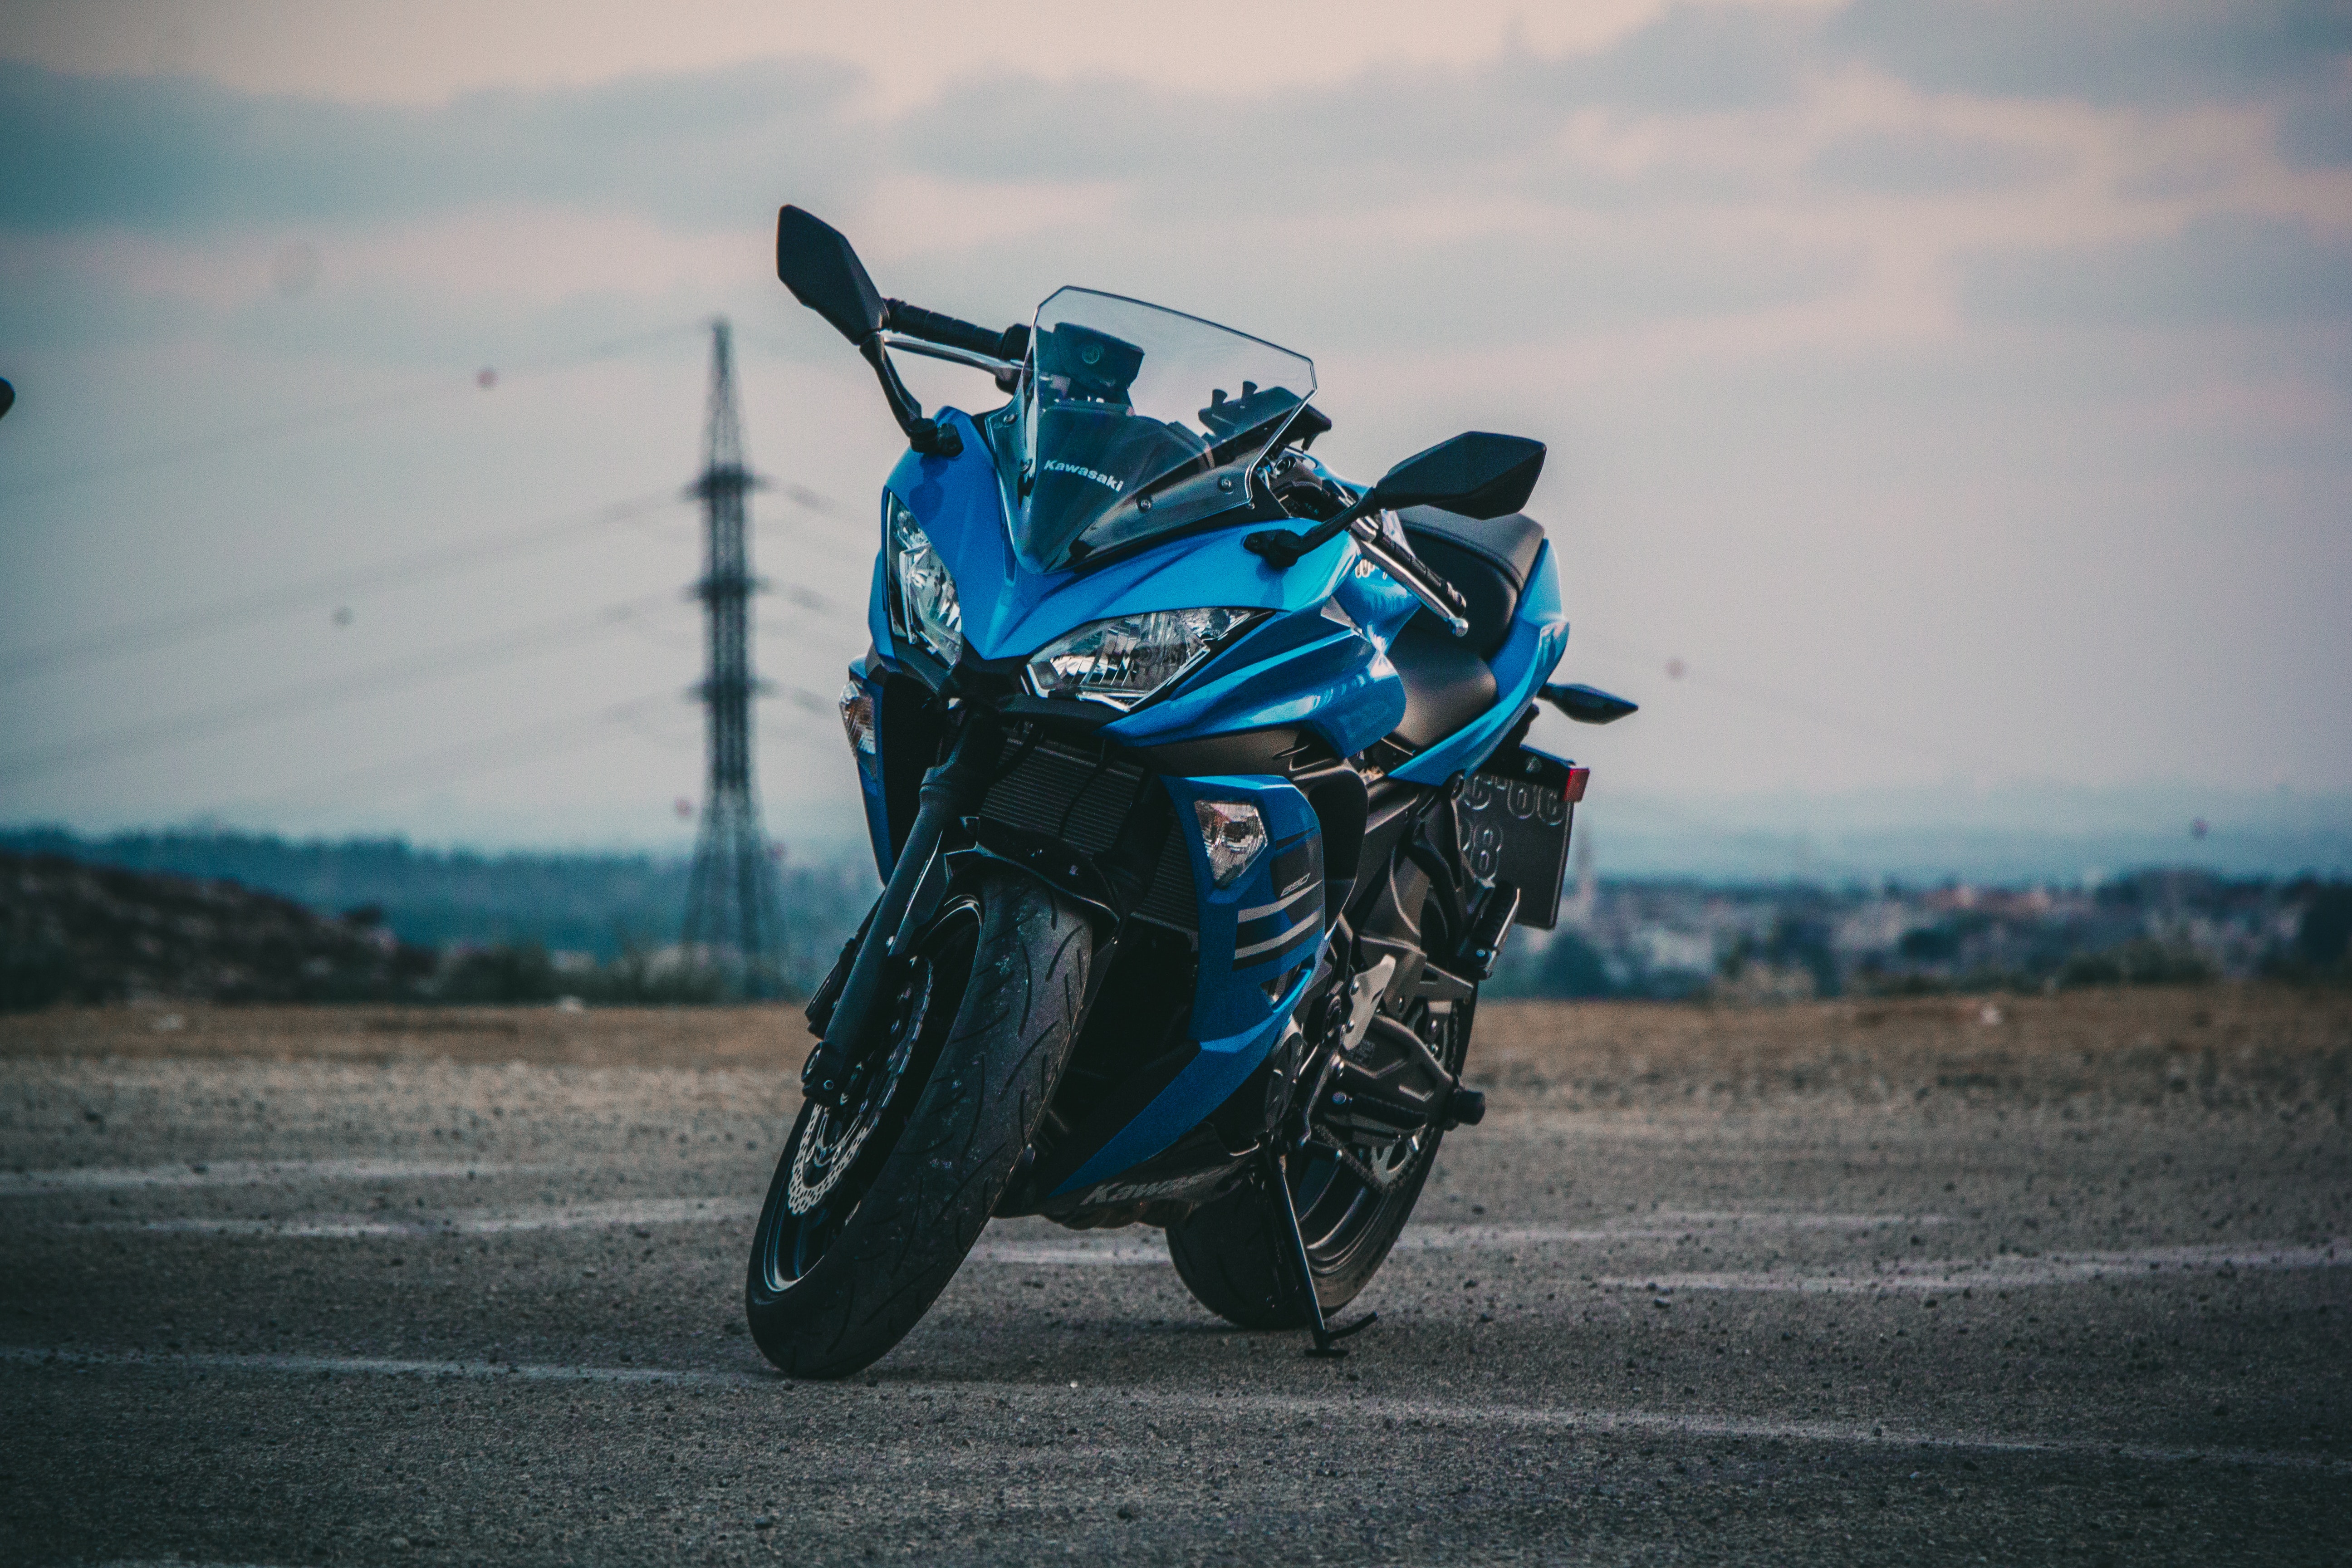 General 5184x3456 motorcycle blue vehicle outdoors Kawasaki Japanese motorcycles